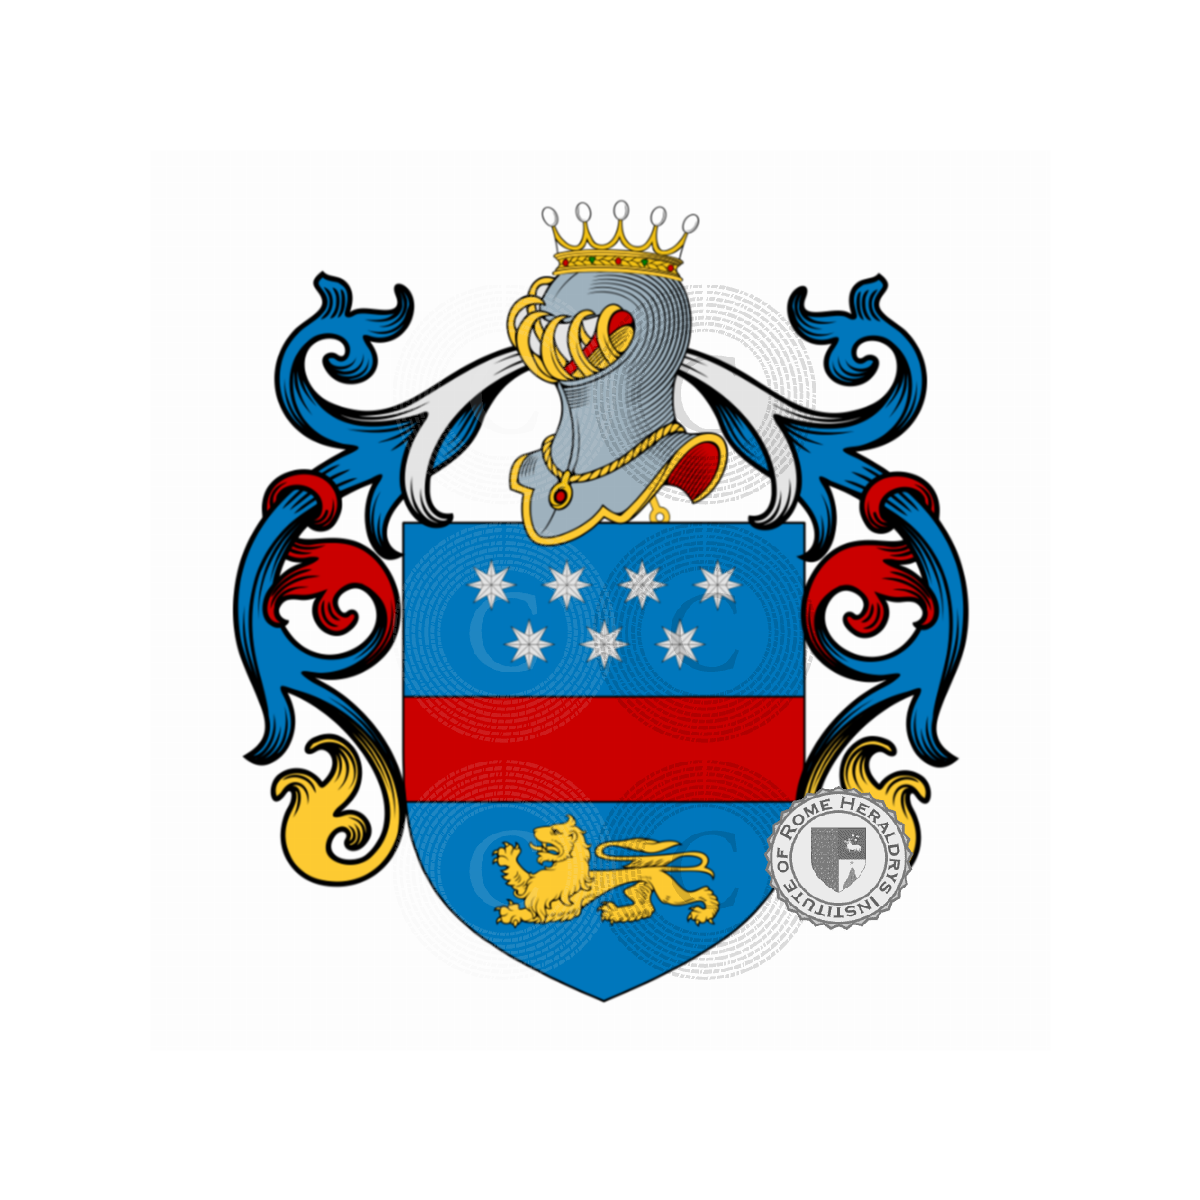 Wappen der FamilieLelli, de Lelli,de Lello,di Lello,Lelio,Lelllo,Nicoli,Randolfi